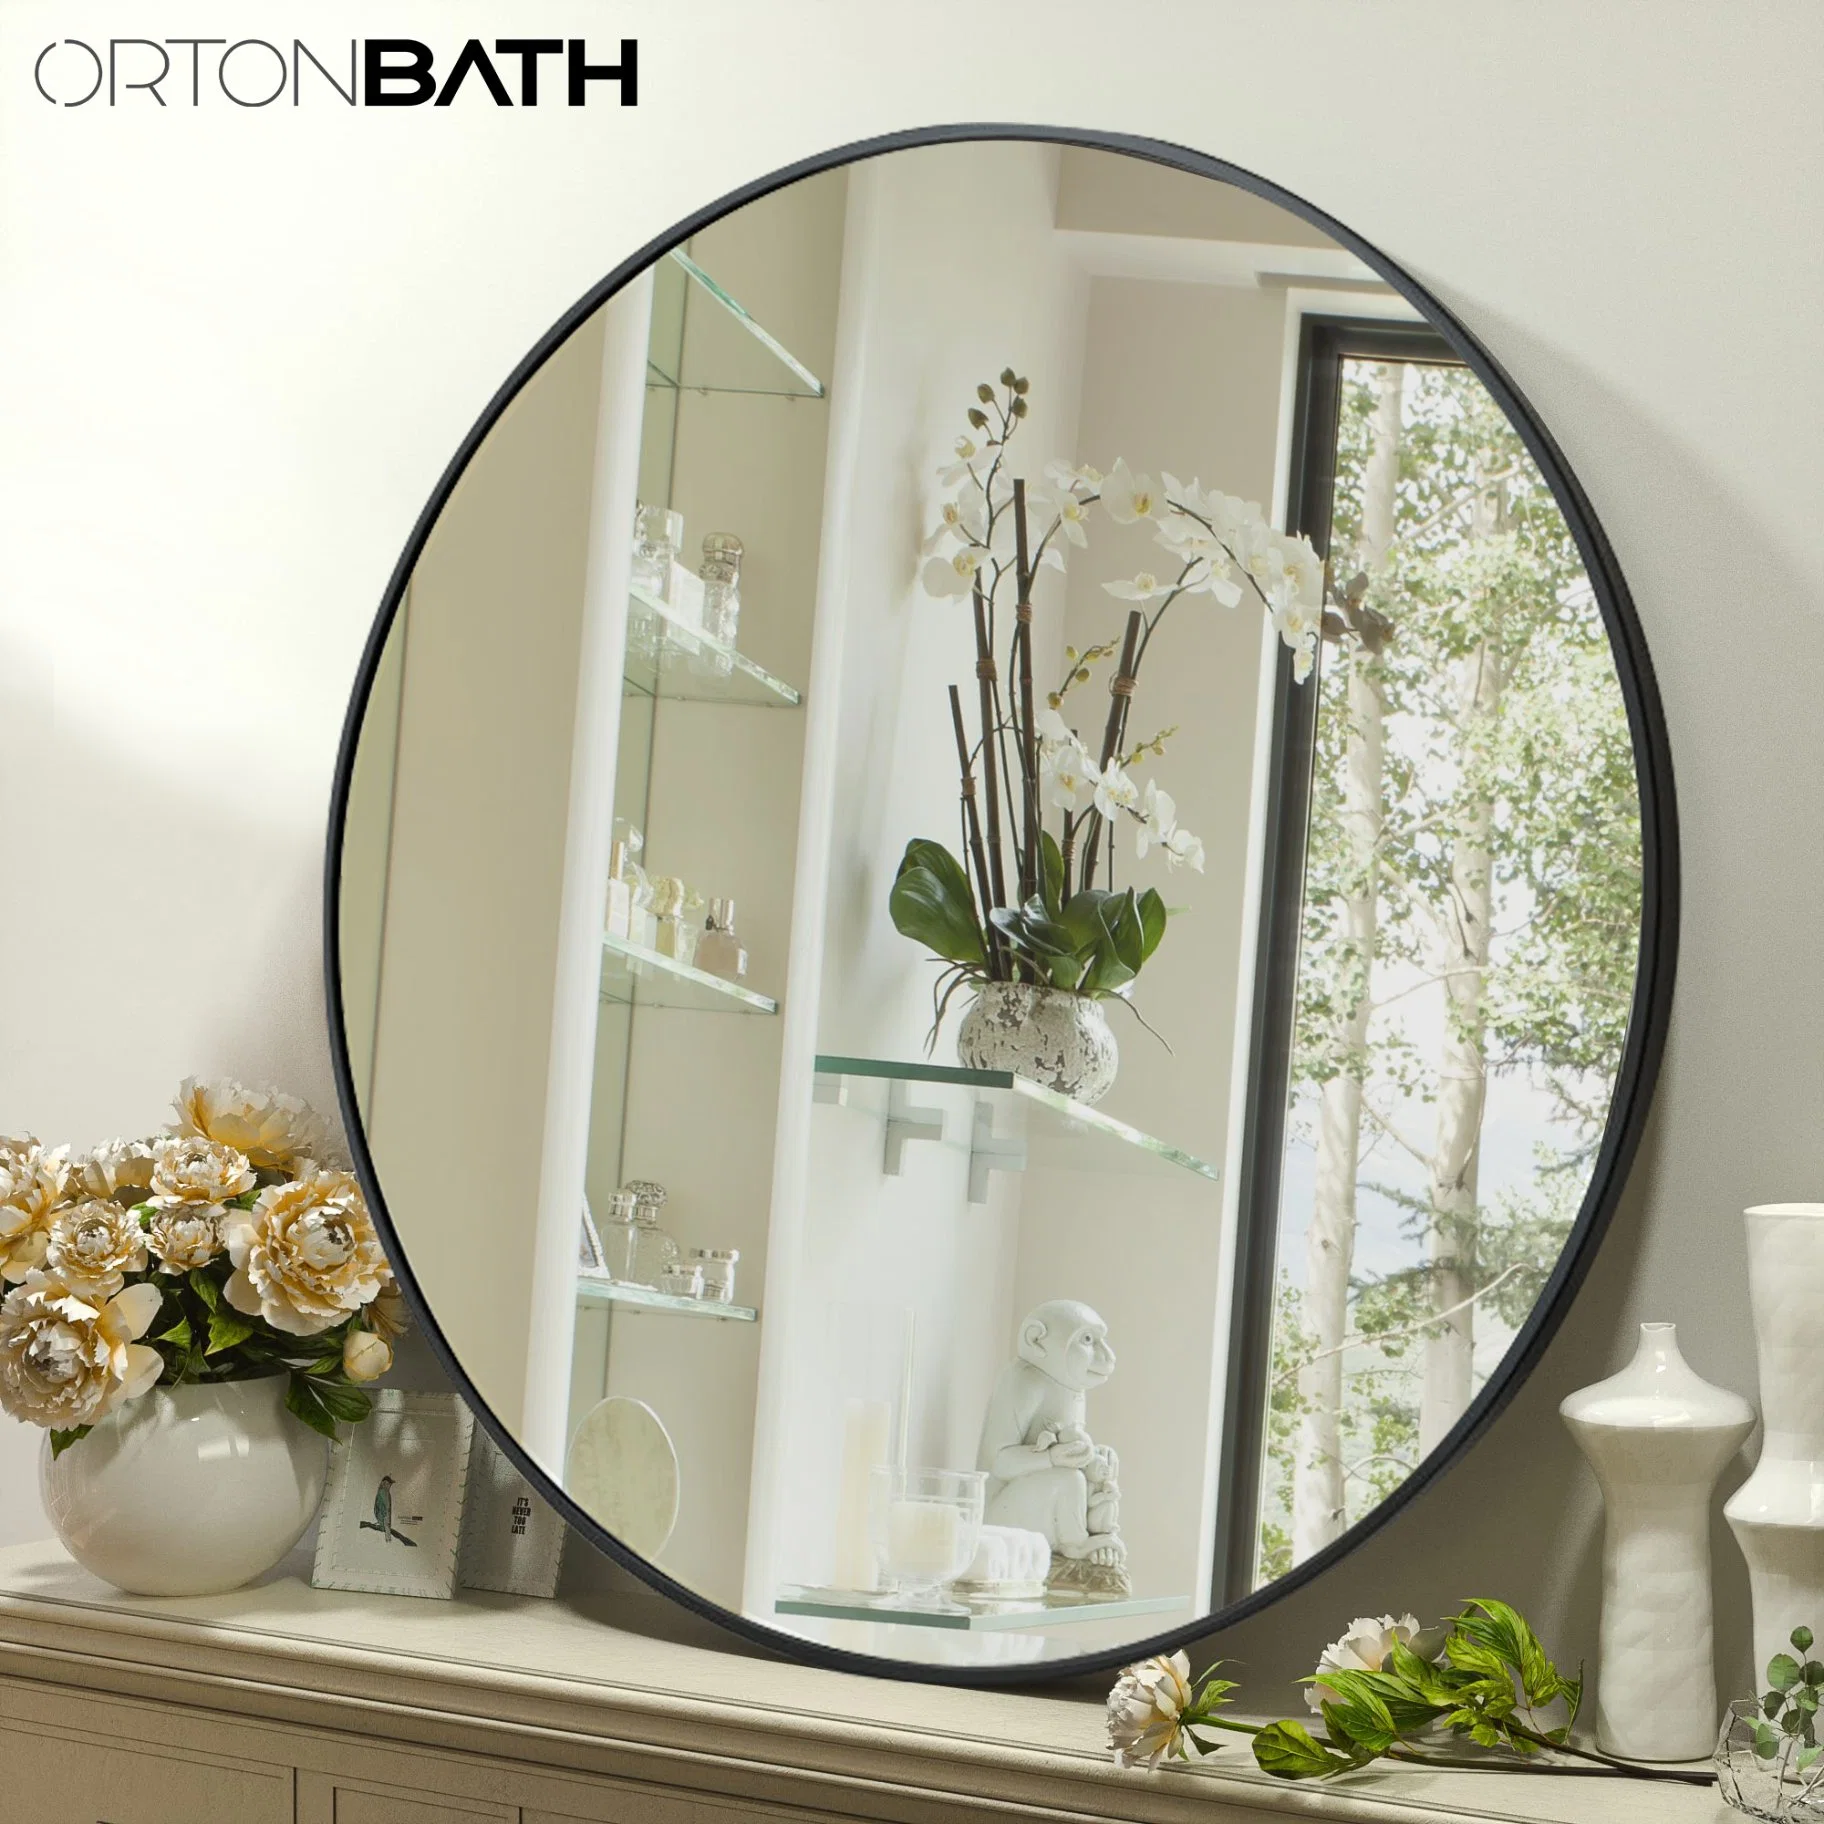 Ortonbath 20 дюйма настенное висячие зеркала для ванной комнаты с. Круглая черная металлическая рамка круглая косметическое зеркало для ванны